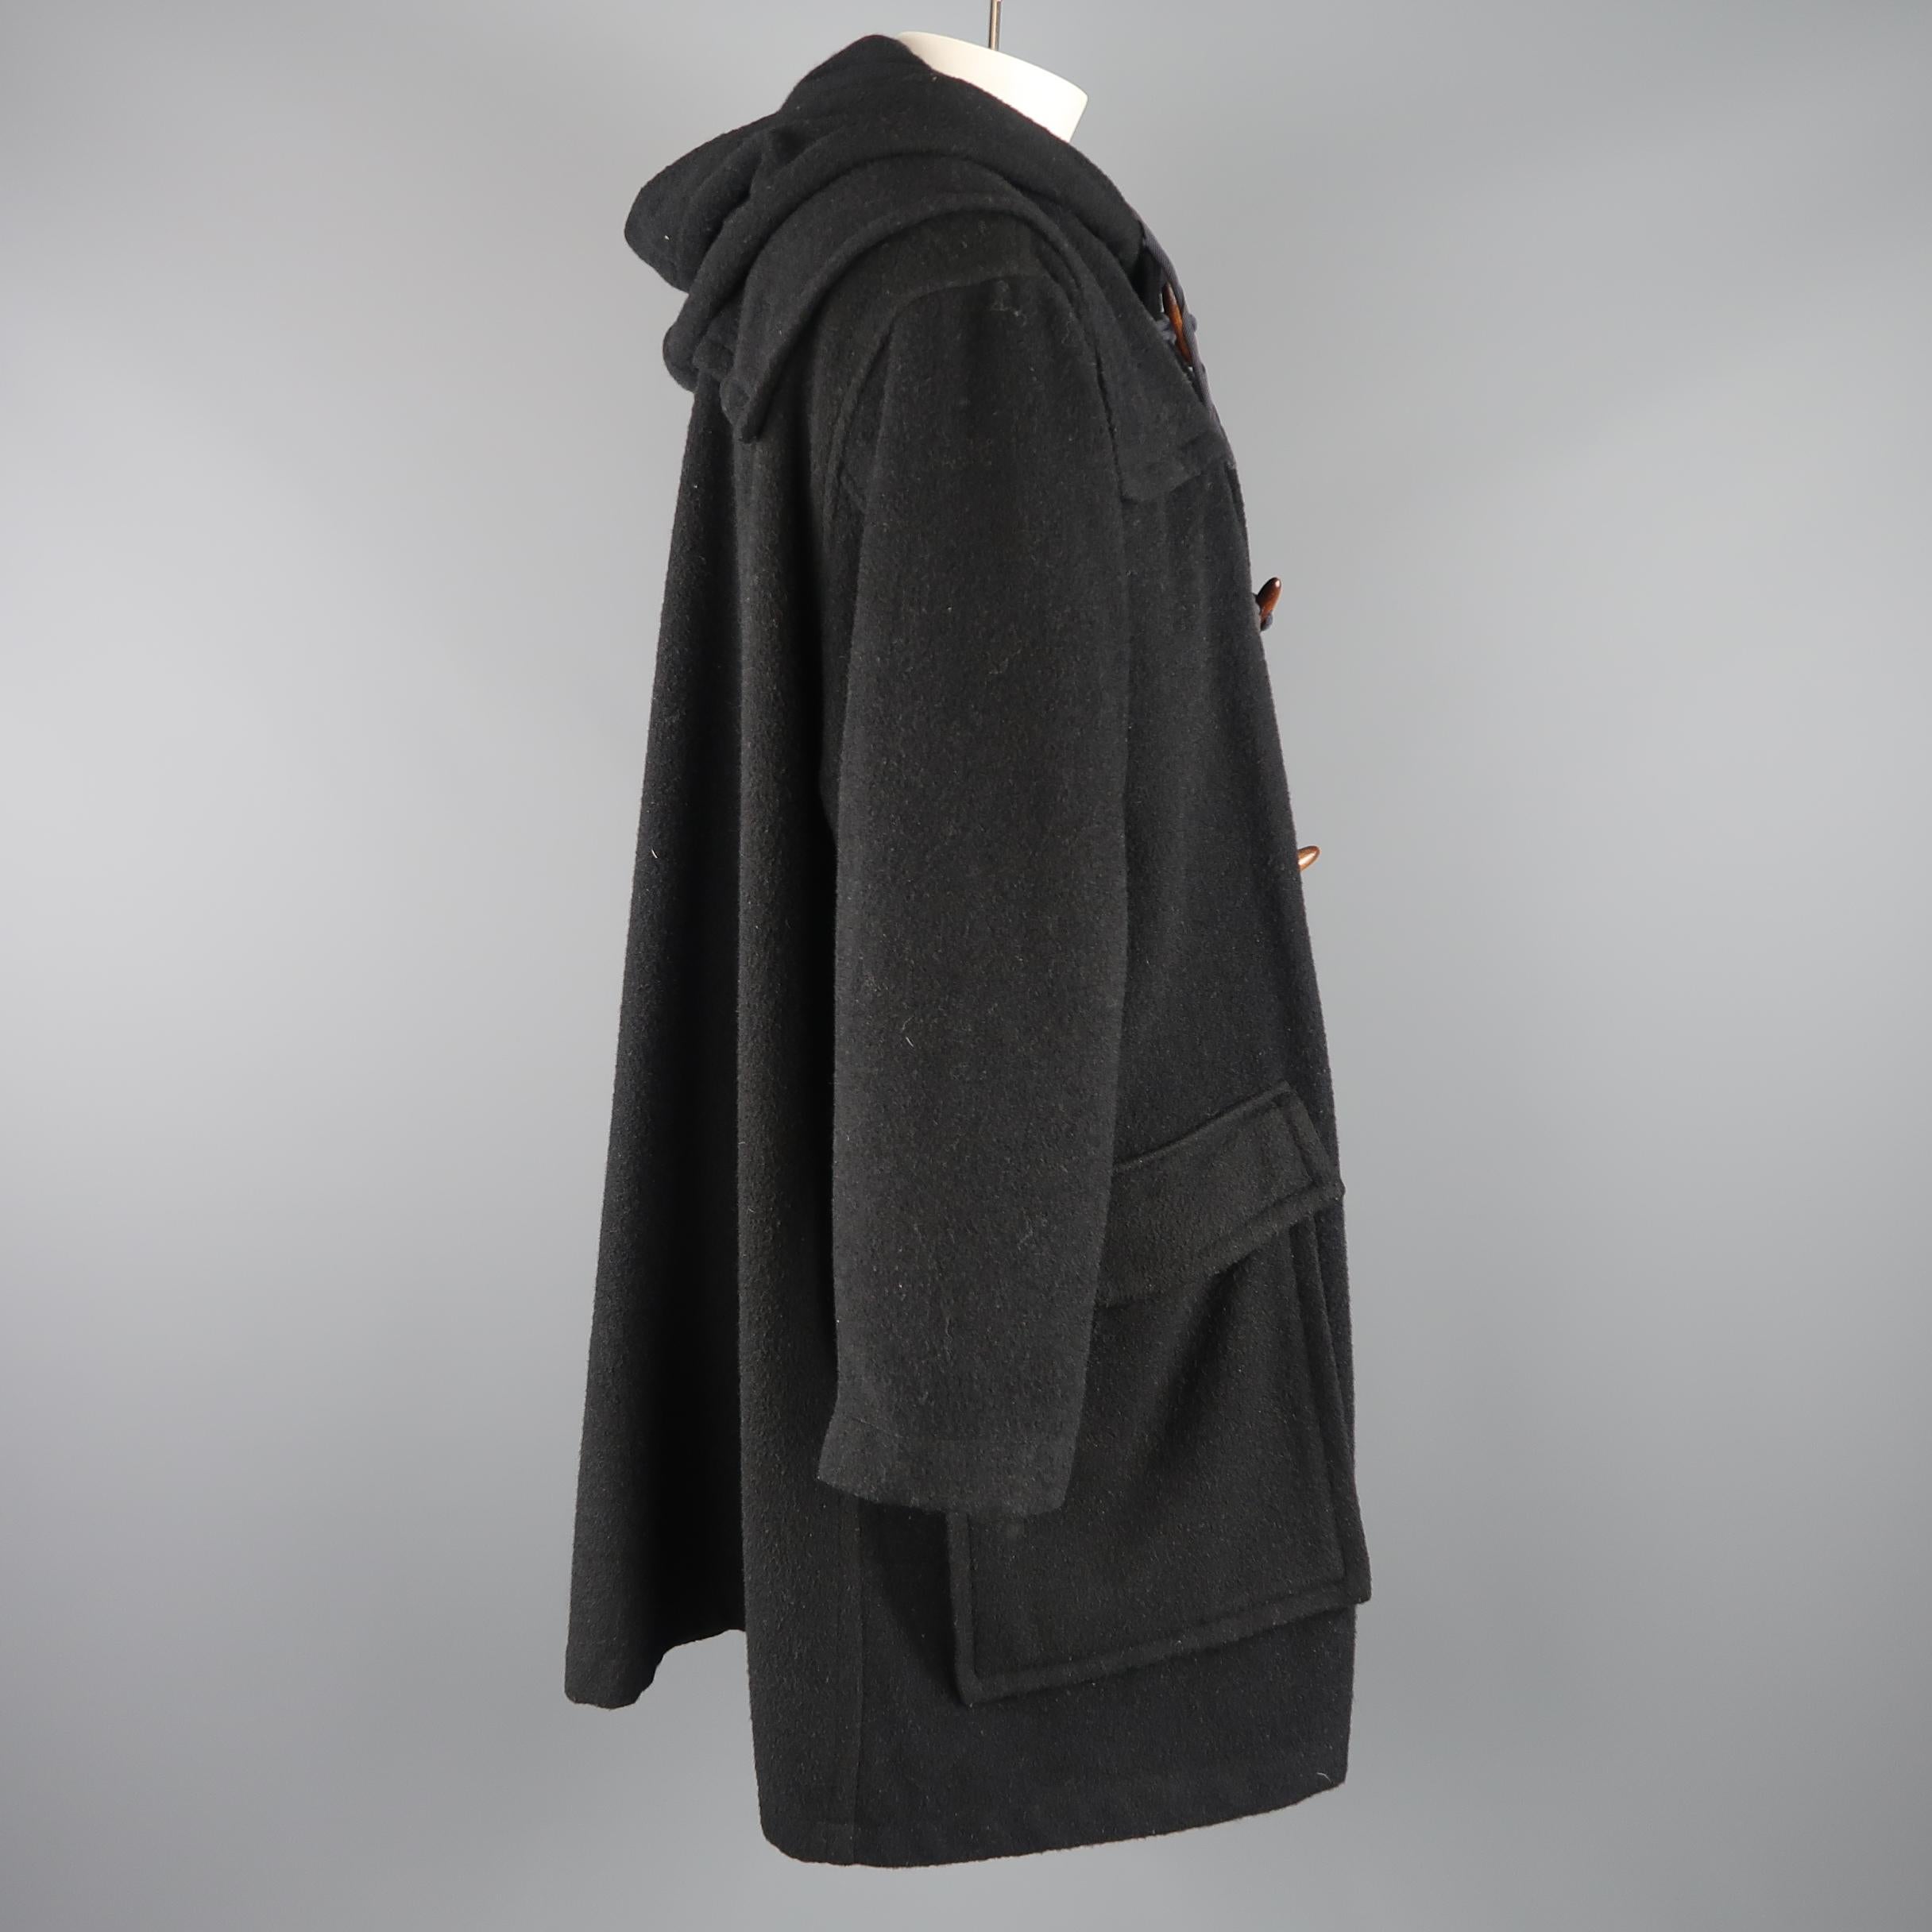 Women's or Men's Junior Gaultier Jean Paul Gaultier Black Oversized Toggle Closure Hooded Coat